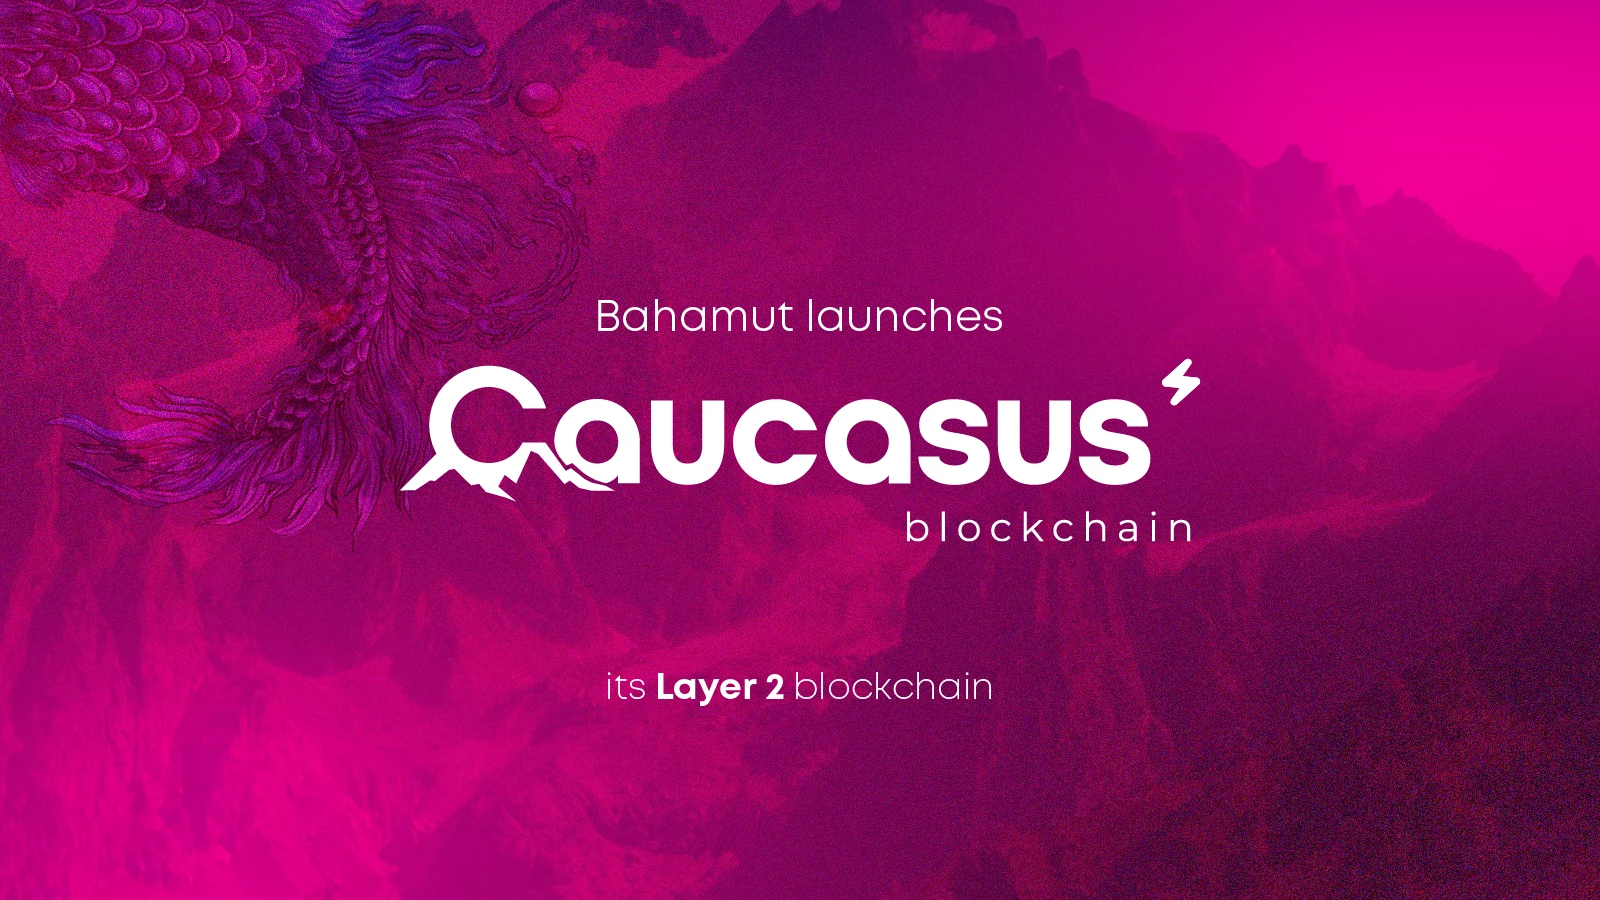 Bahamut lanza Caucasus, su blockchain de Capa 2